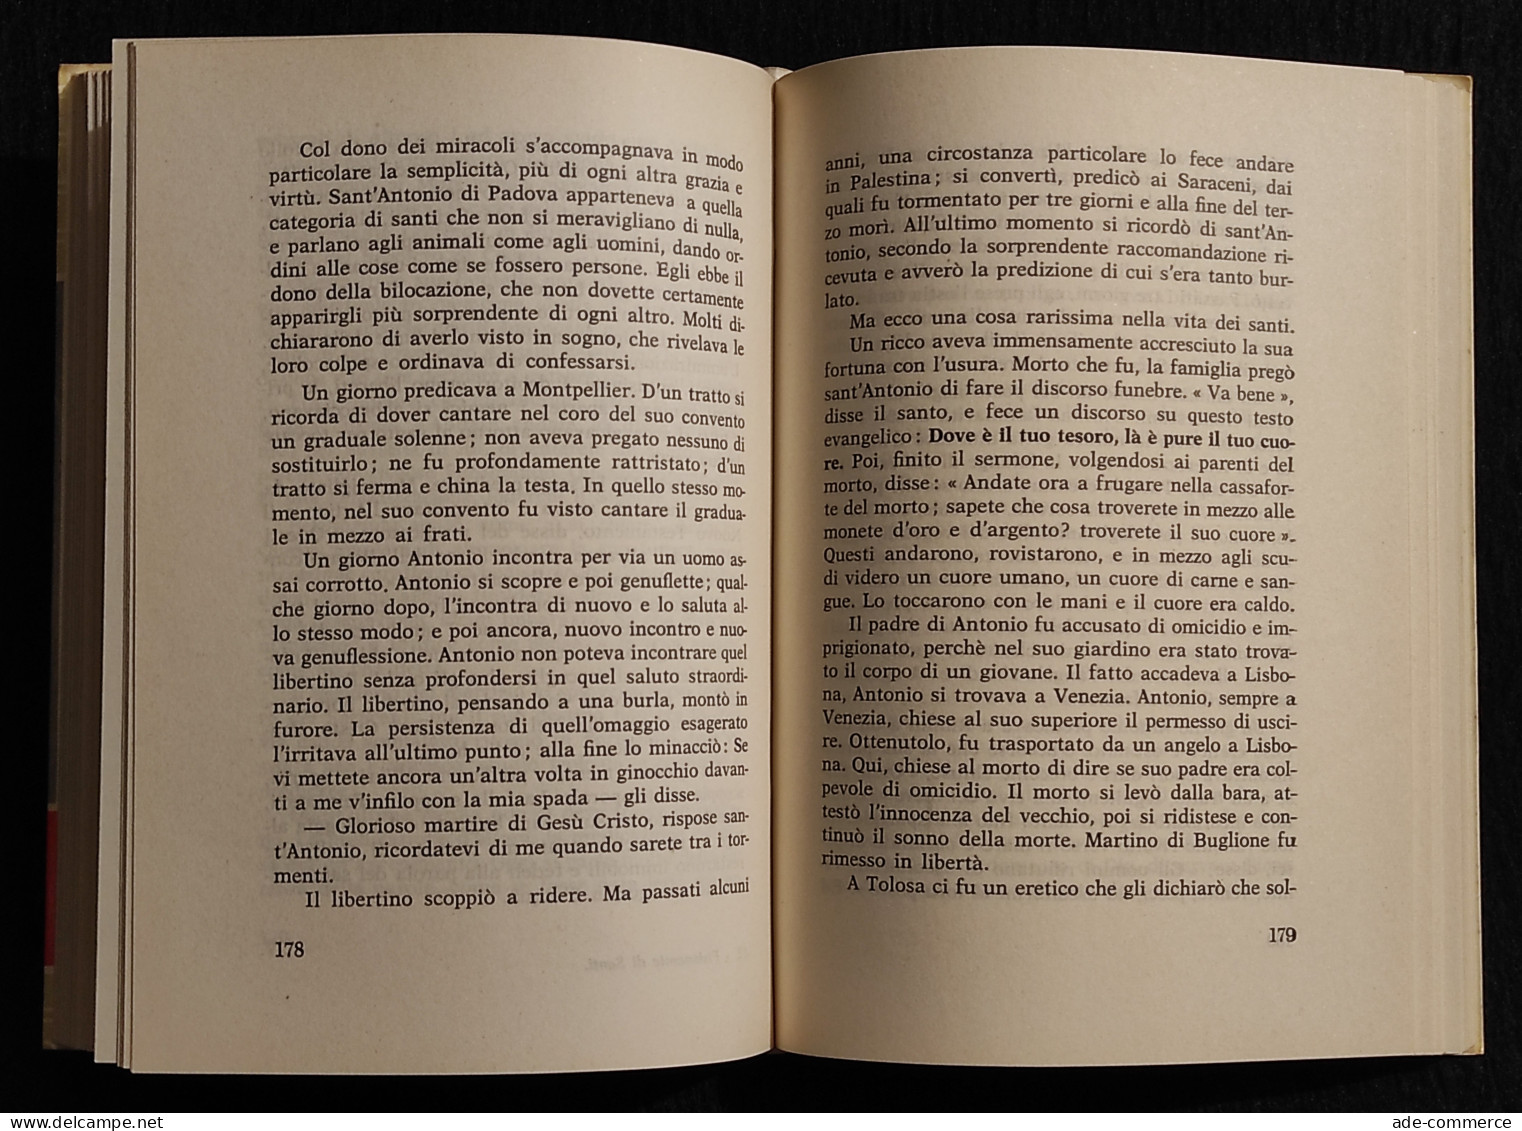 Fisionomie Di Santi - E. Hello - Ed. Paoline - 1959 - Religione